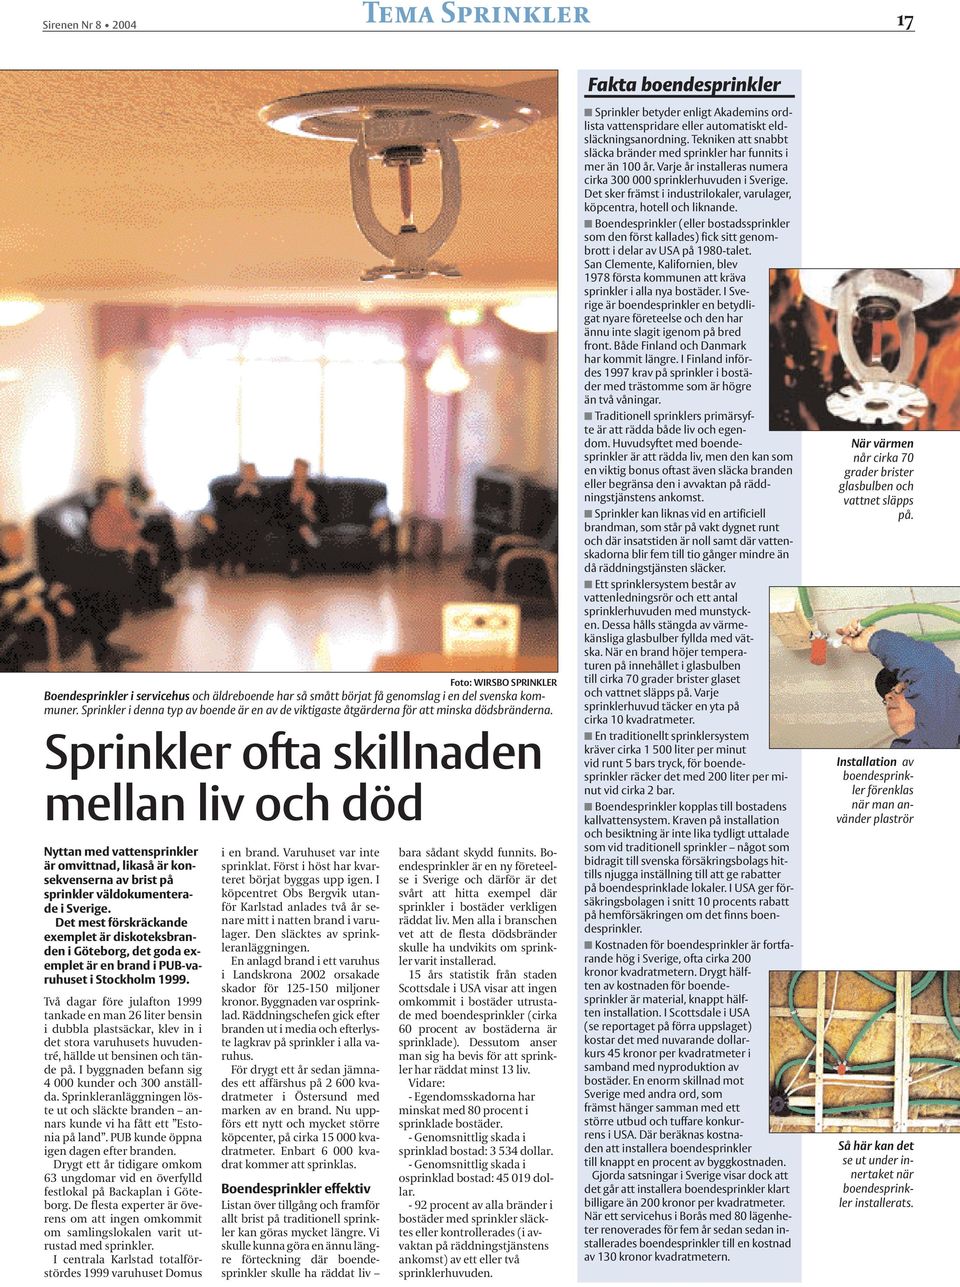 Sprinkler ofta skillnaden mellan liv och död Nyttan med vattensprinkler är omvittnad, likaså är konsekvenserna av brist på sprinkler väldokumenterade i Sverige.